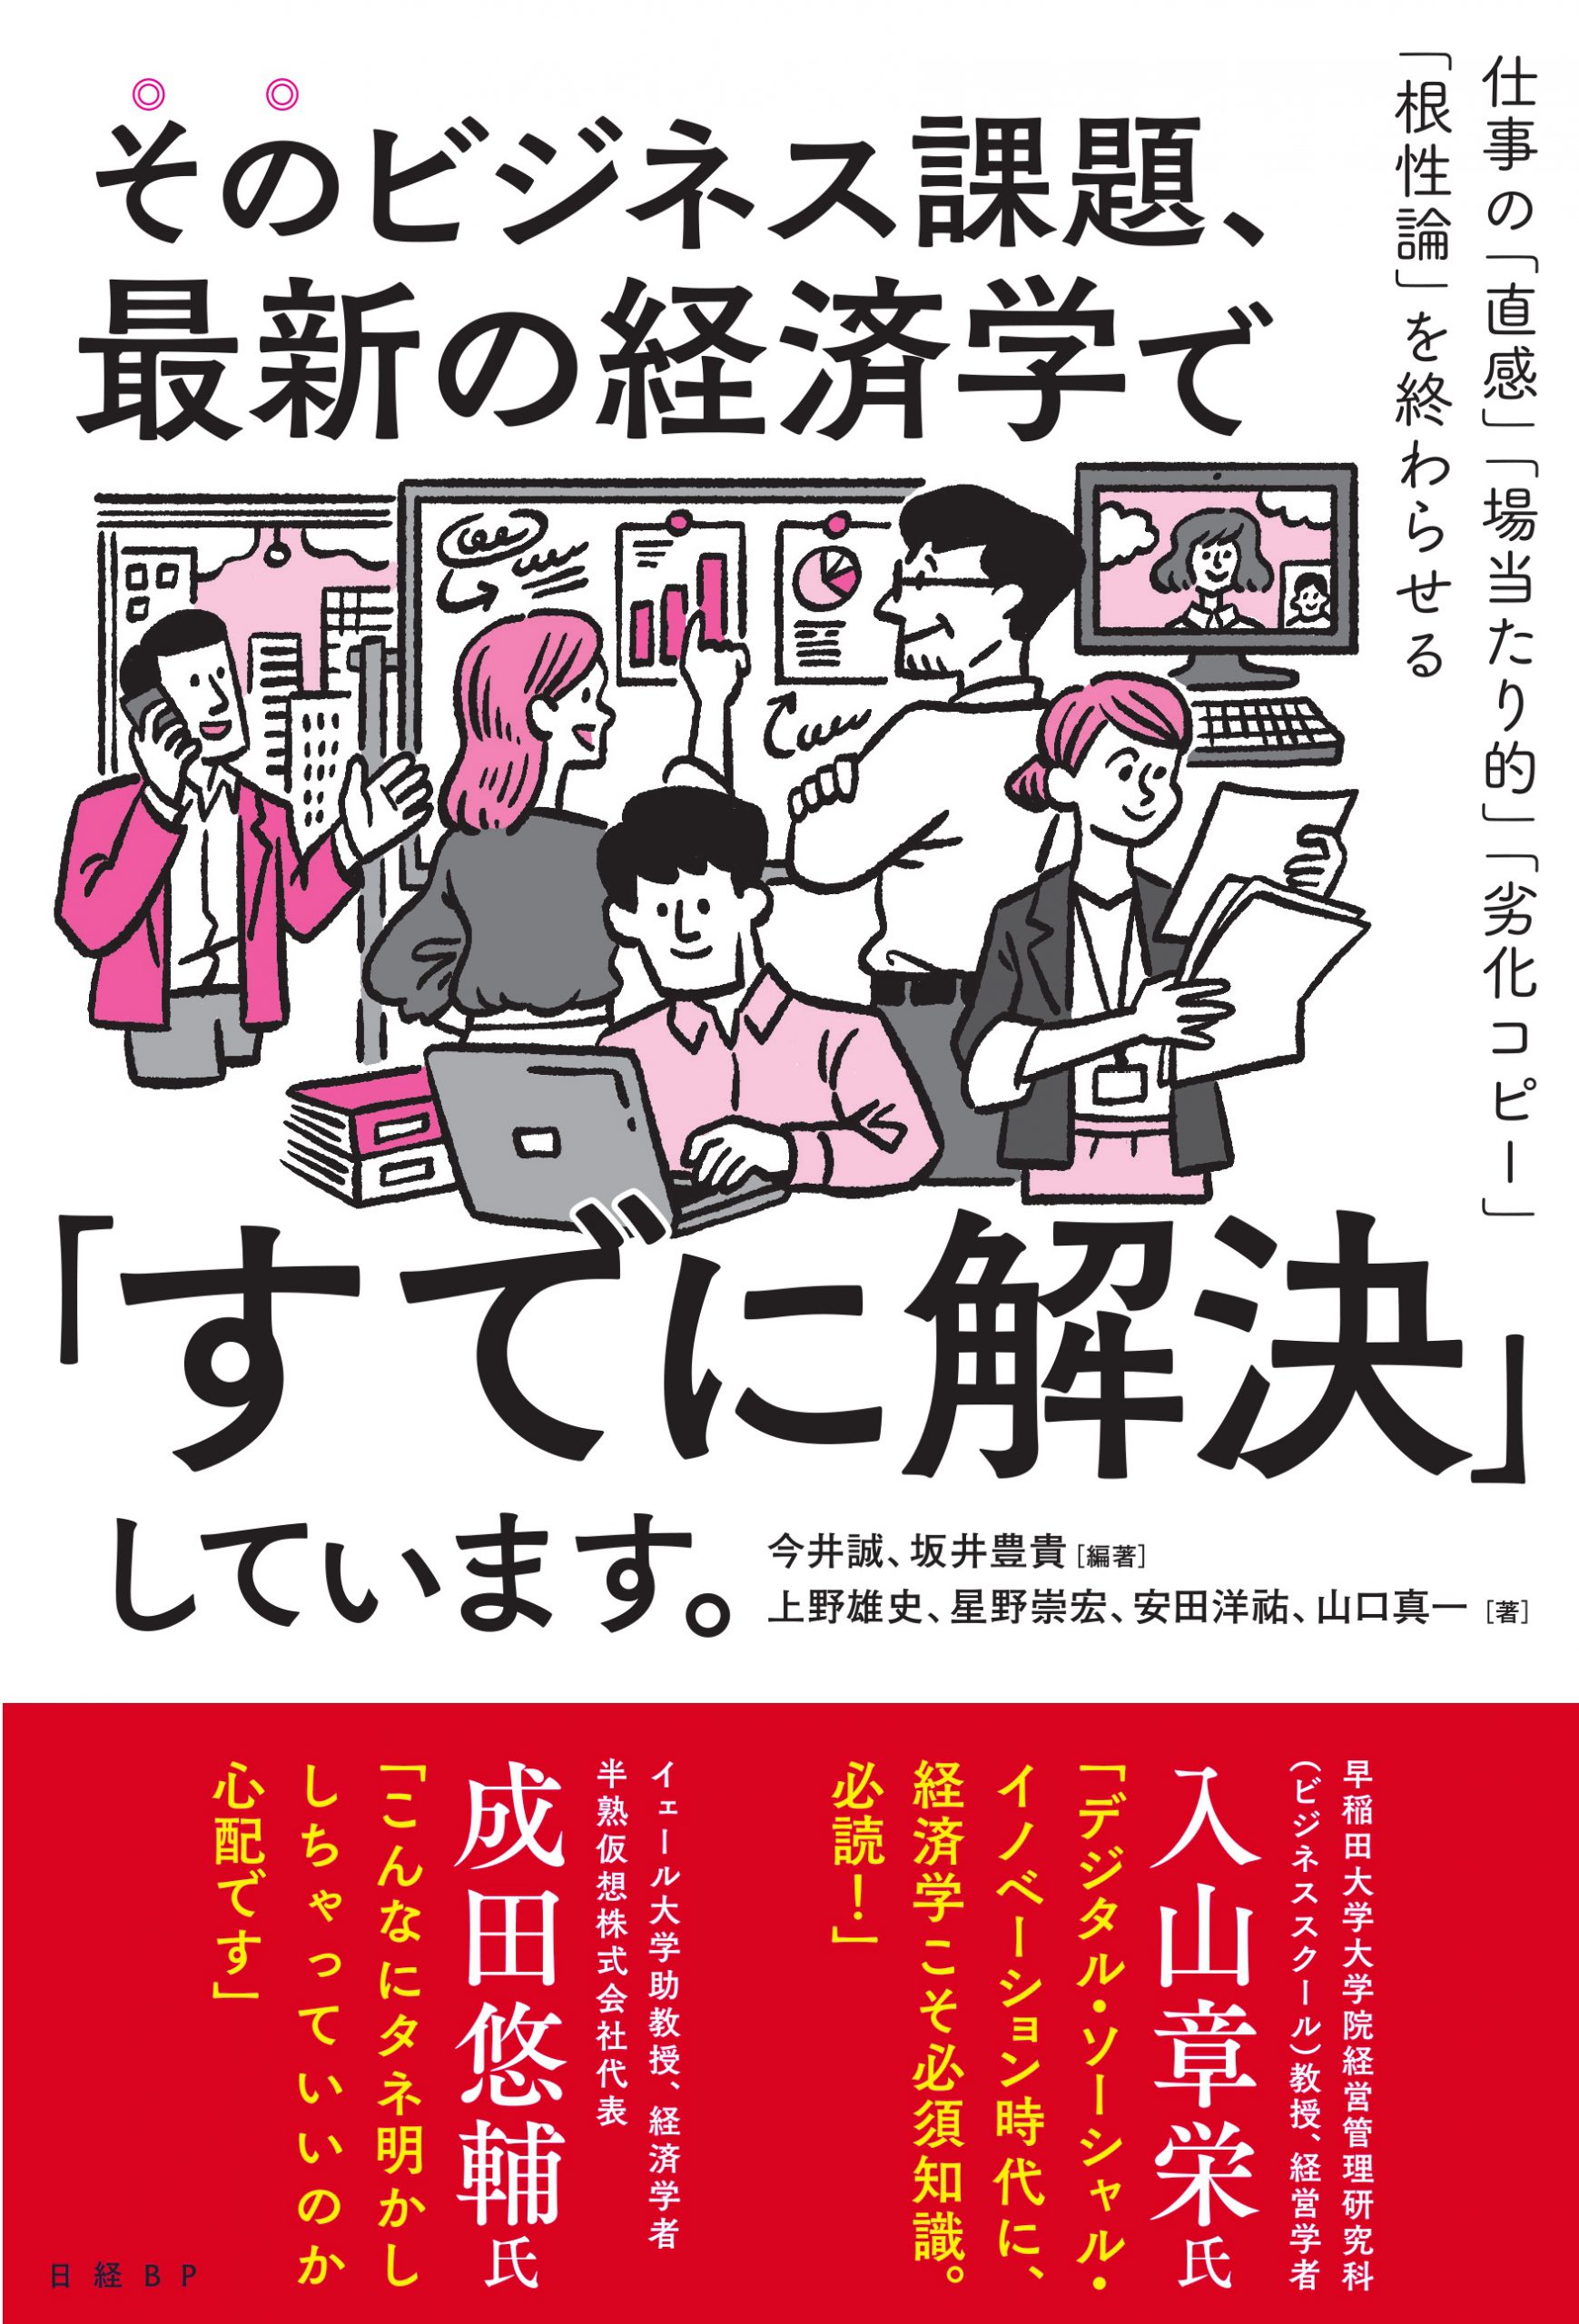 オンラインイベント The Night School×三省堂書店  Presents「このビジネス課題、こうやって解決しました。」